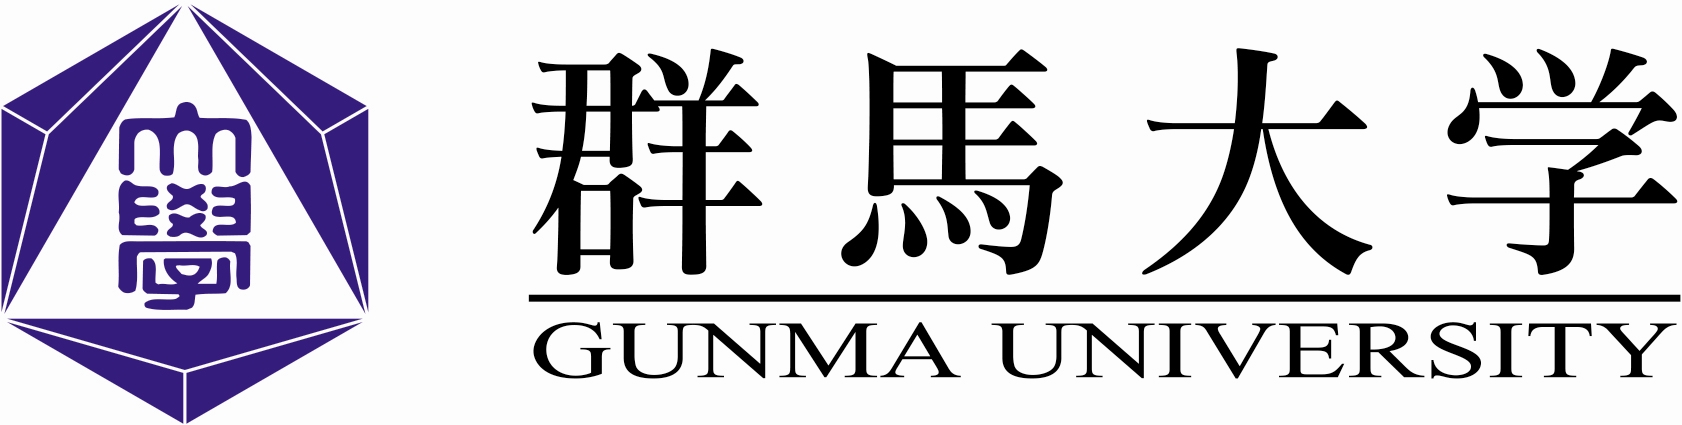 群馬大学 Gunma University